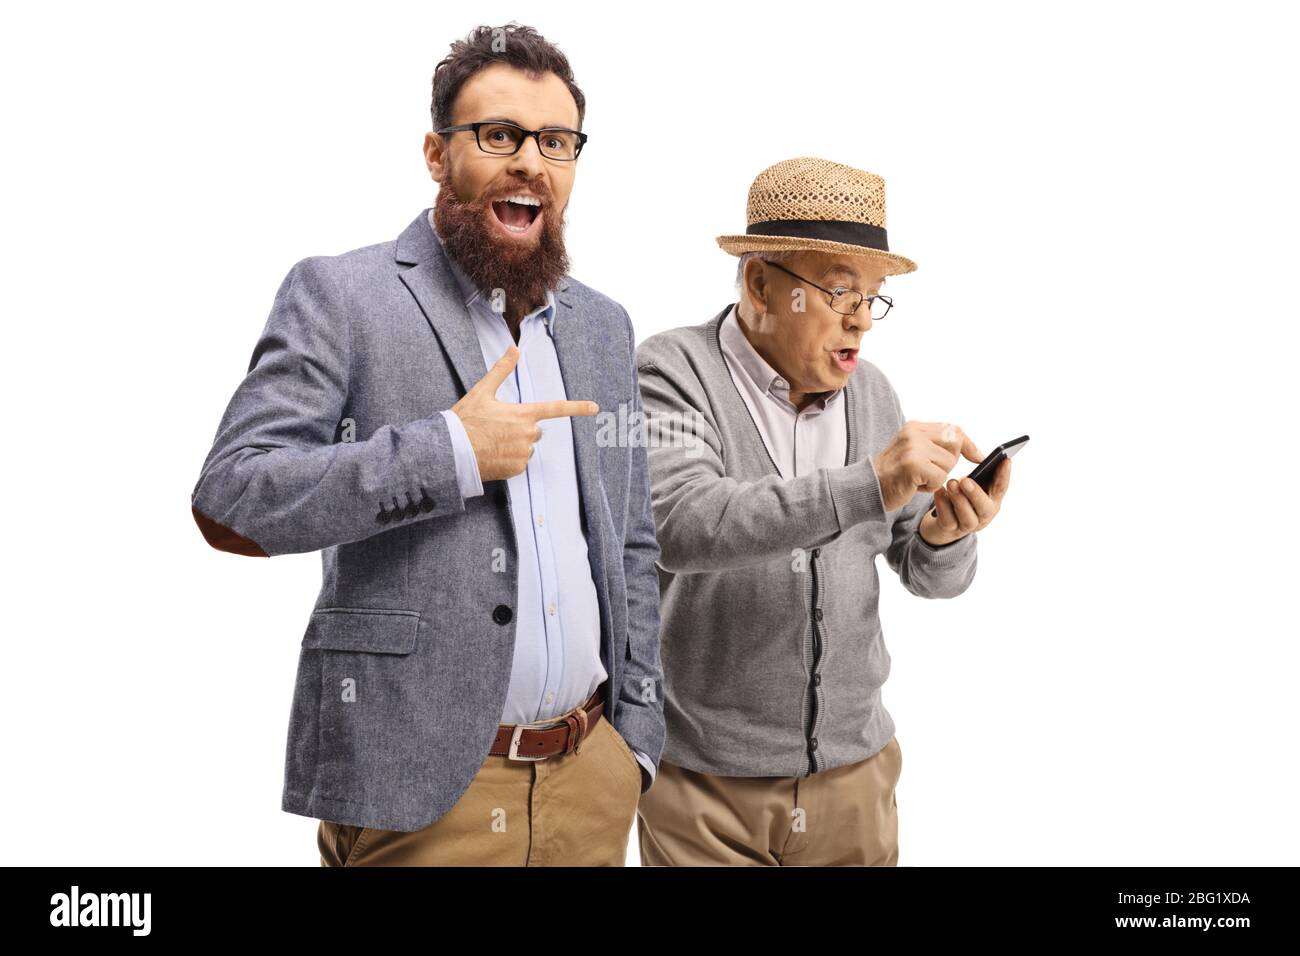 Uomo bearded ridendo e indicando un uomo anziano usando un telefono cellulare isolato su sfondo bianco Foto Stock